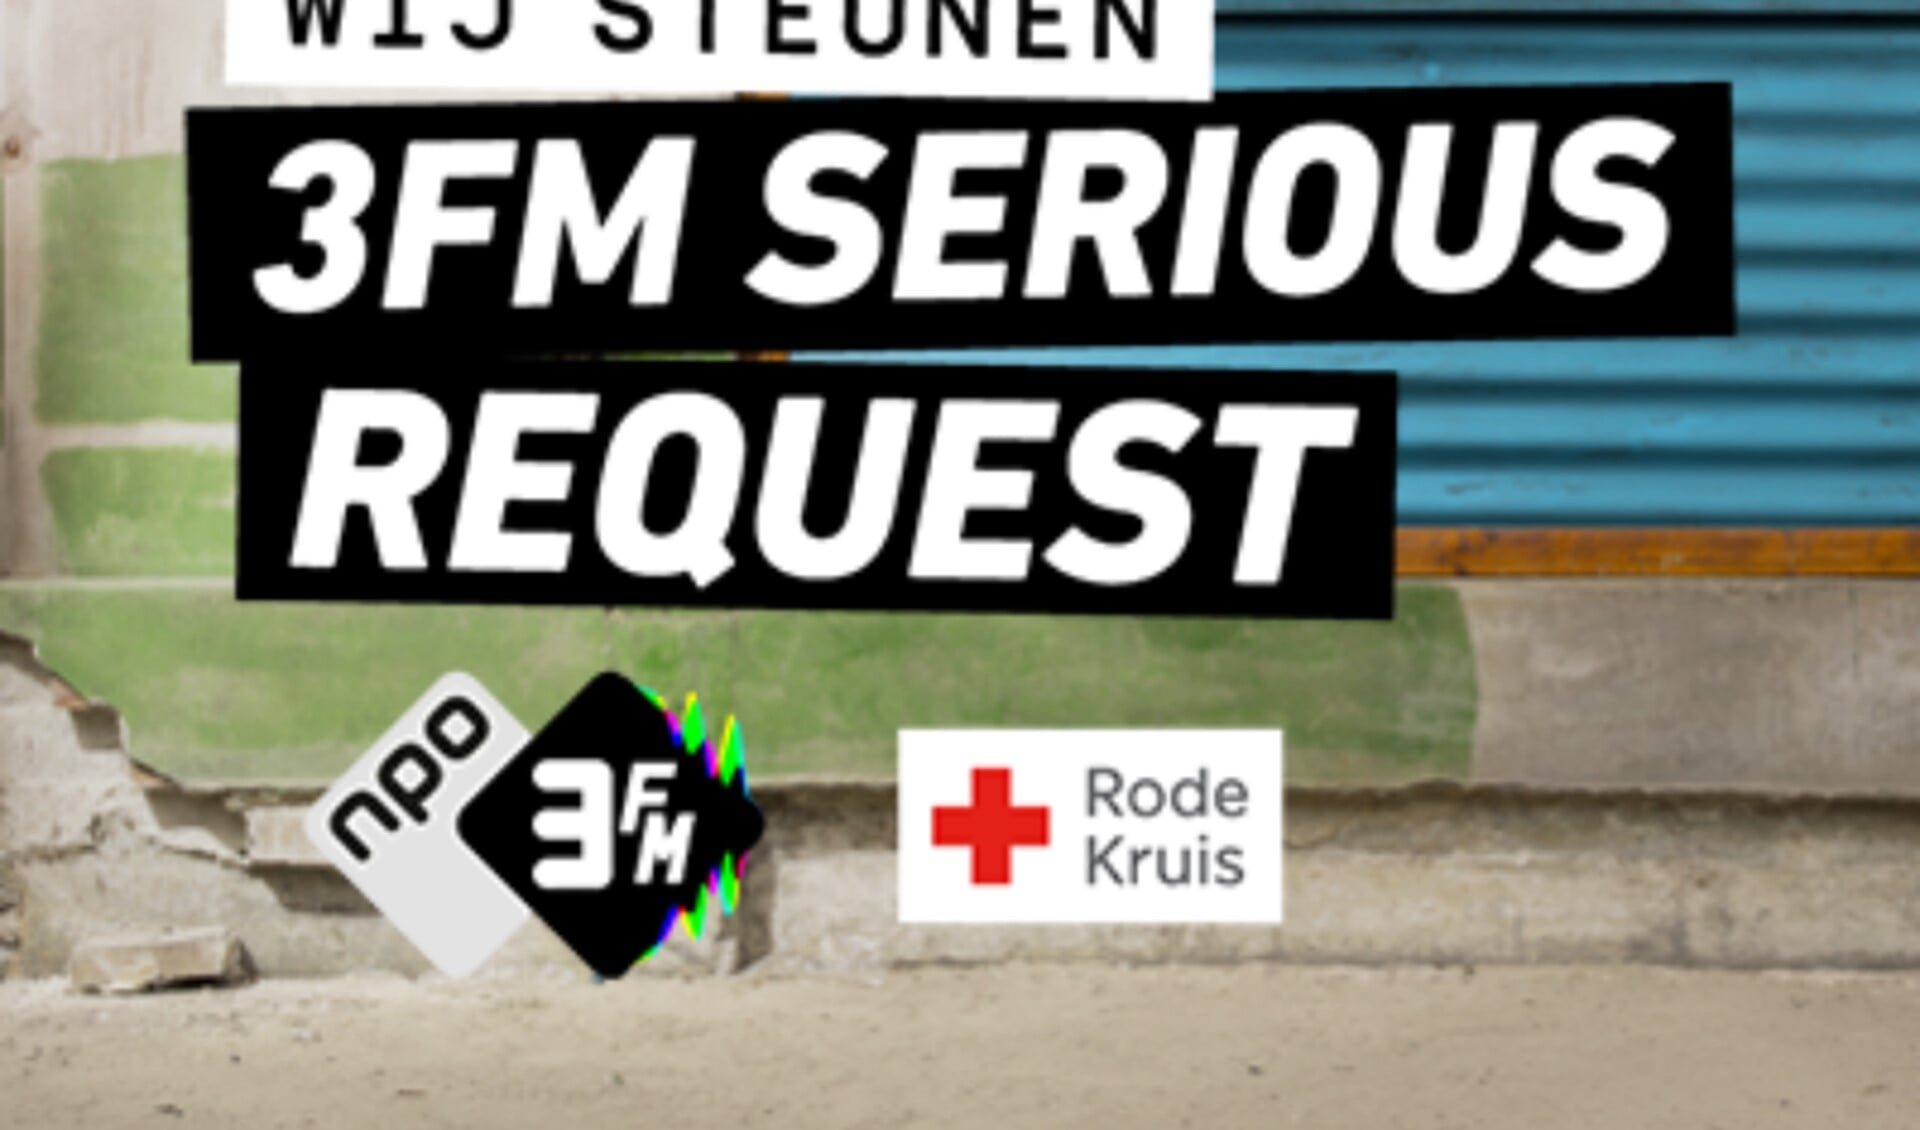 Met deze actie hoopt de regionale omroep van Voorne-Putten, LINQ Media, zoveel mogelijk geld op te halen voor 3FM Serious Request